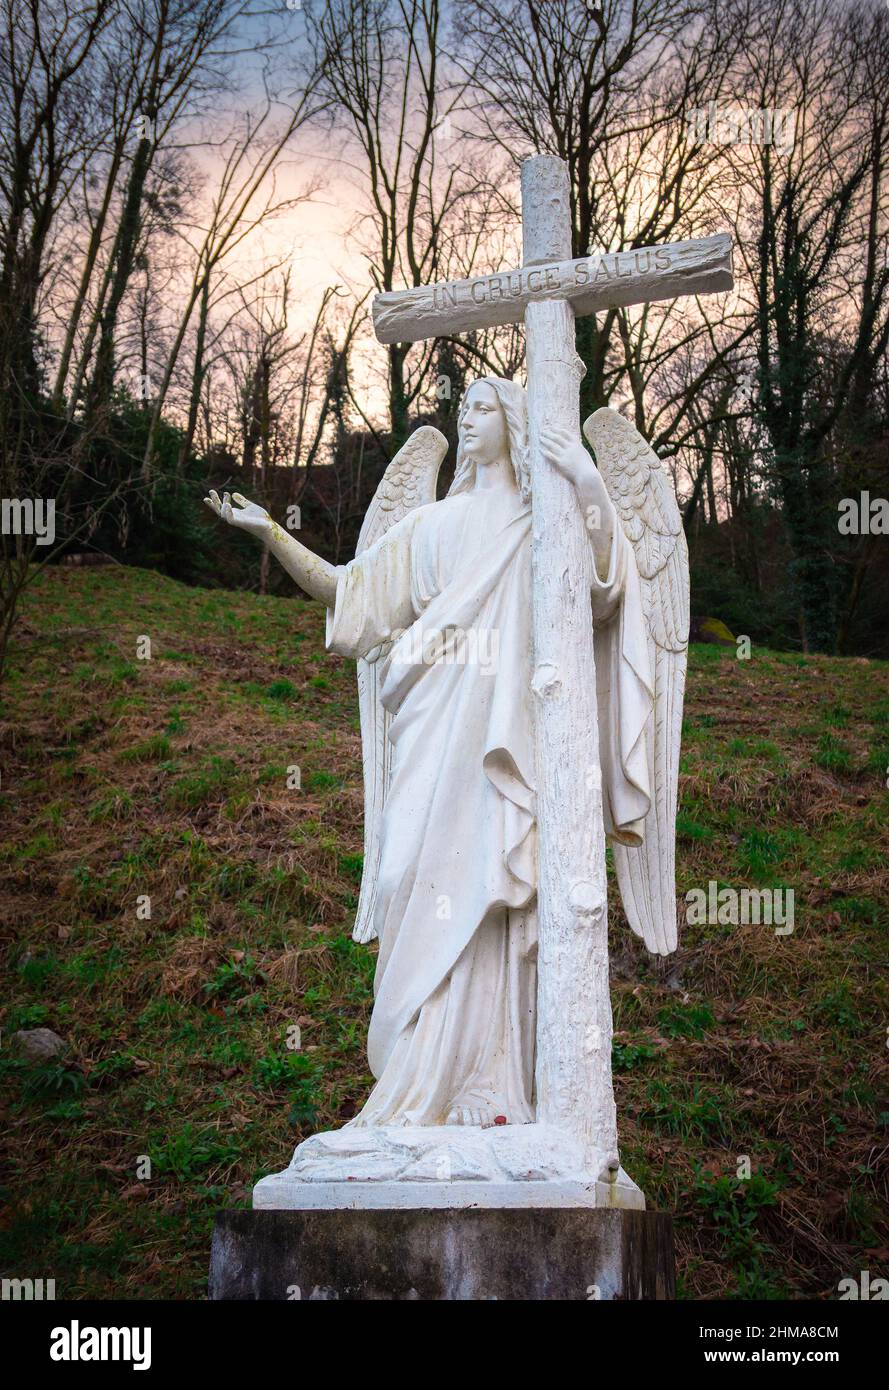 Lourdes, Francia - 5 gennaio 2022: Scultura bianca dell'angelo con la croce con l'iscrizione latina in cruce salus - tradotto in inglese: Nella c Foto Stock